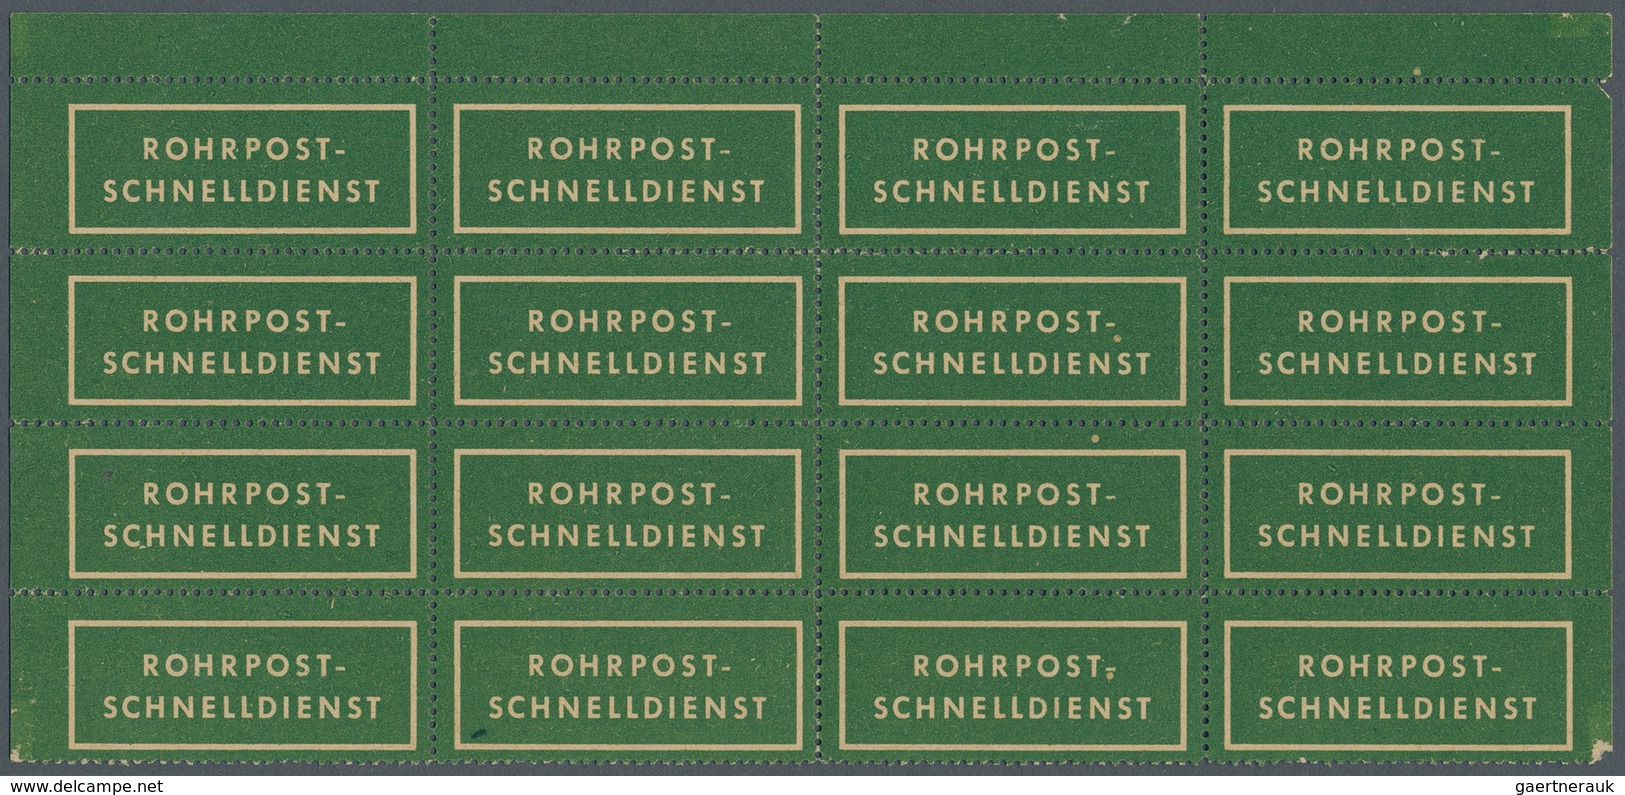 Berlin - Postschnelldienst: Rohrpost-Schnelldienst Grüner Aufkleber Für Die Sendungen Im Bogenteil Z - Briefe U. Dokumente